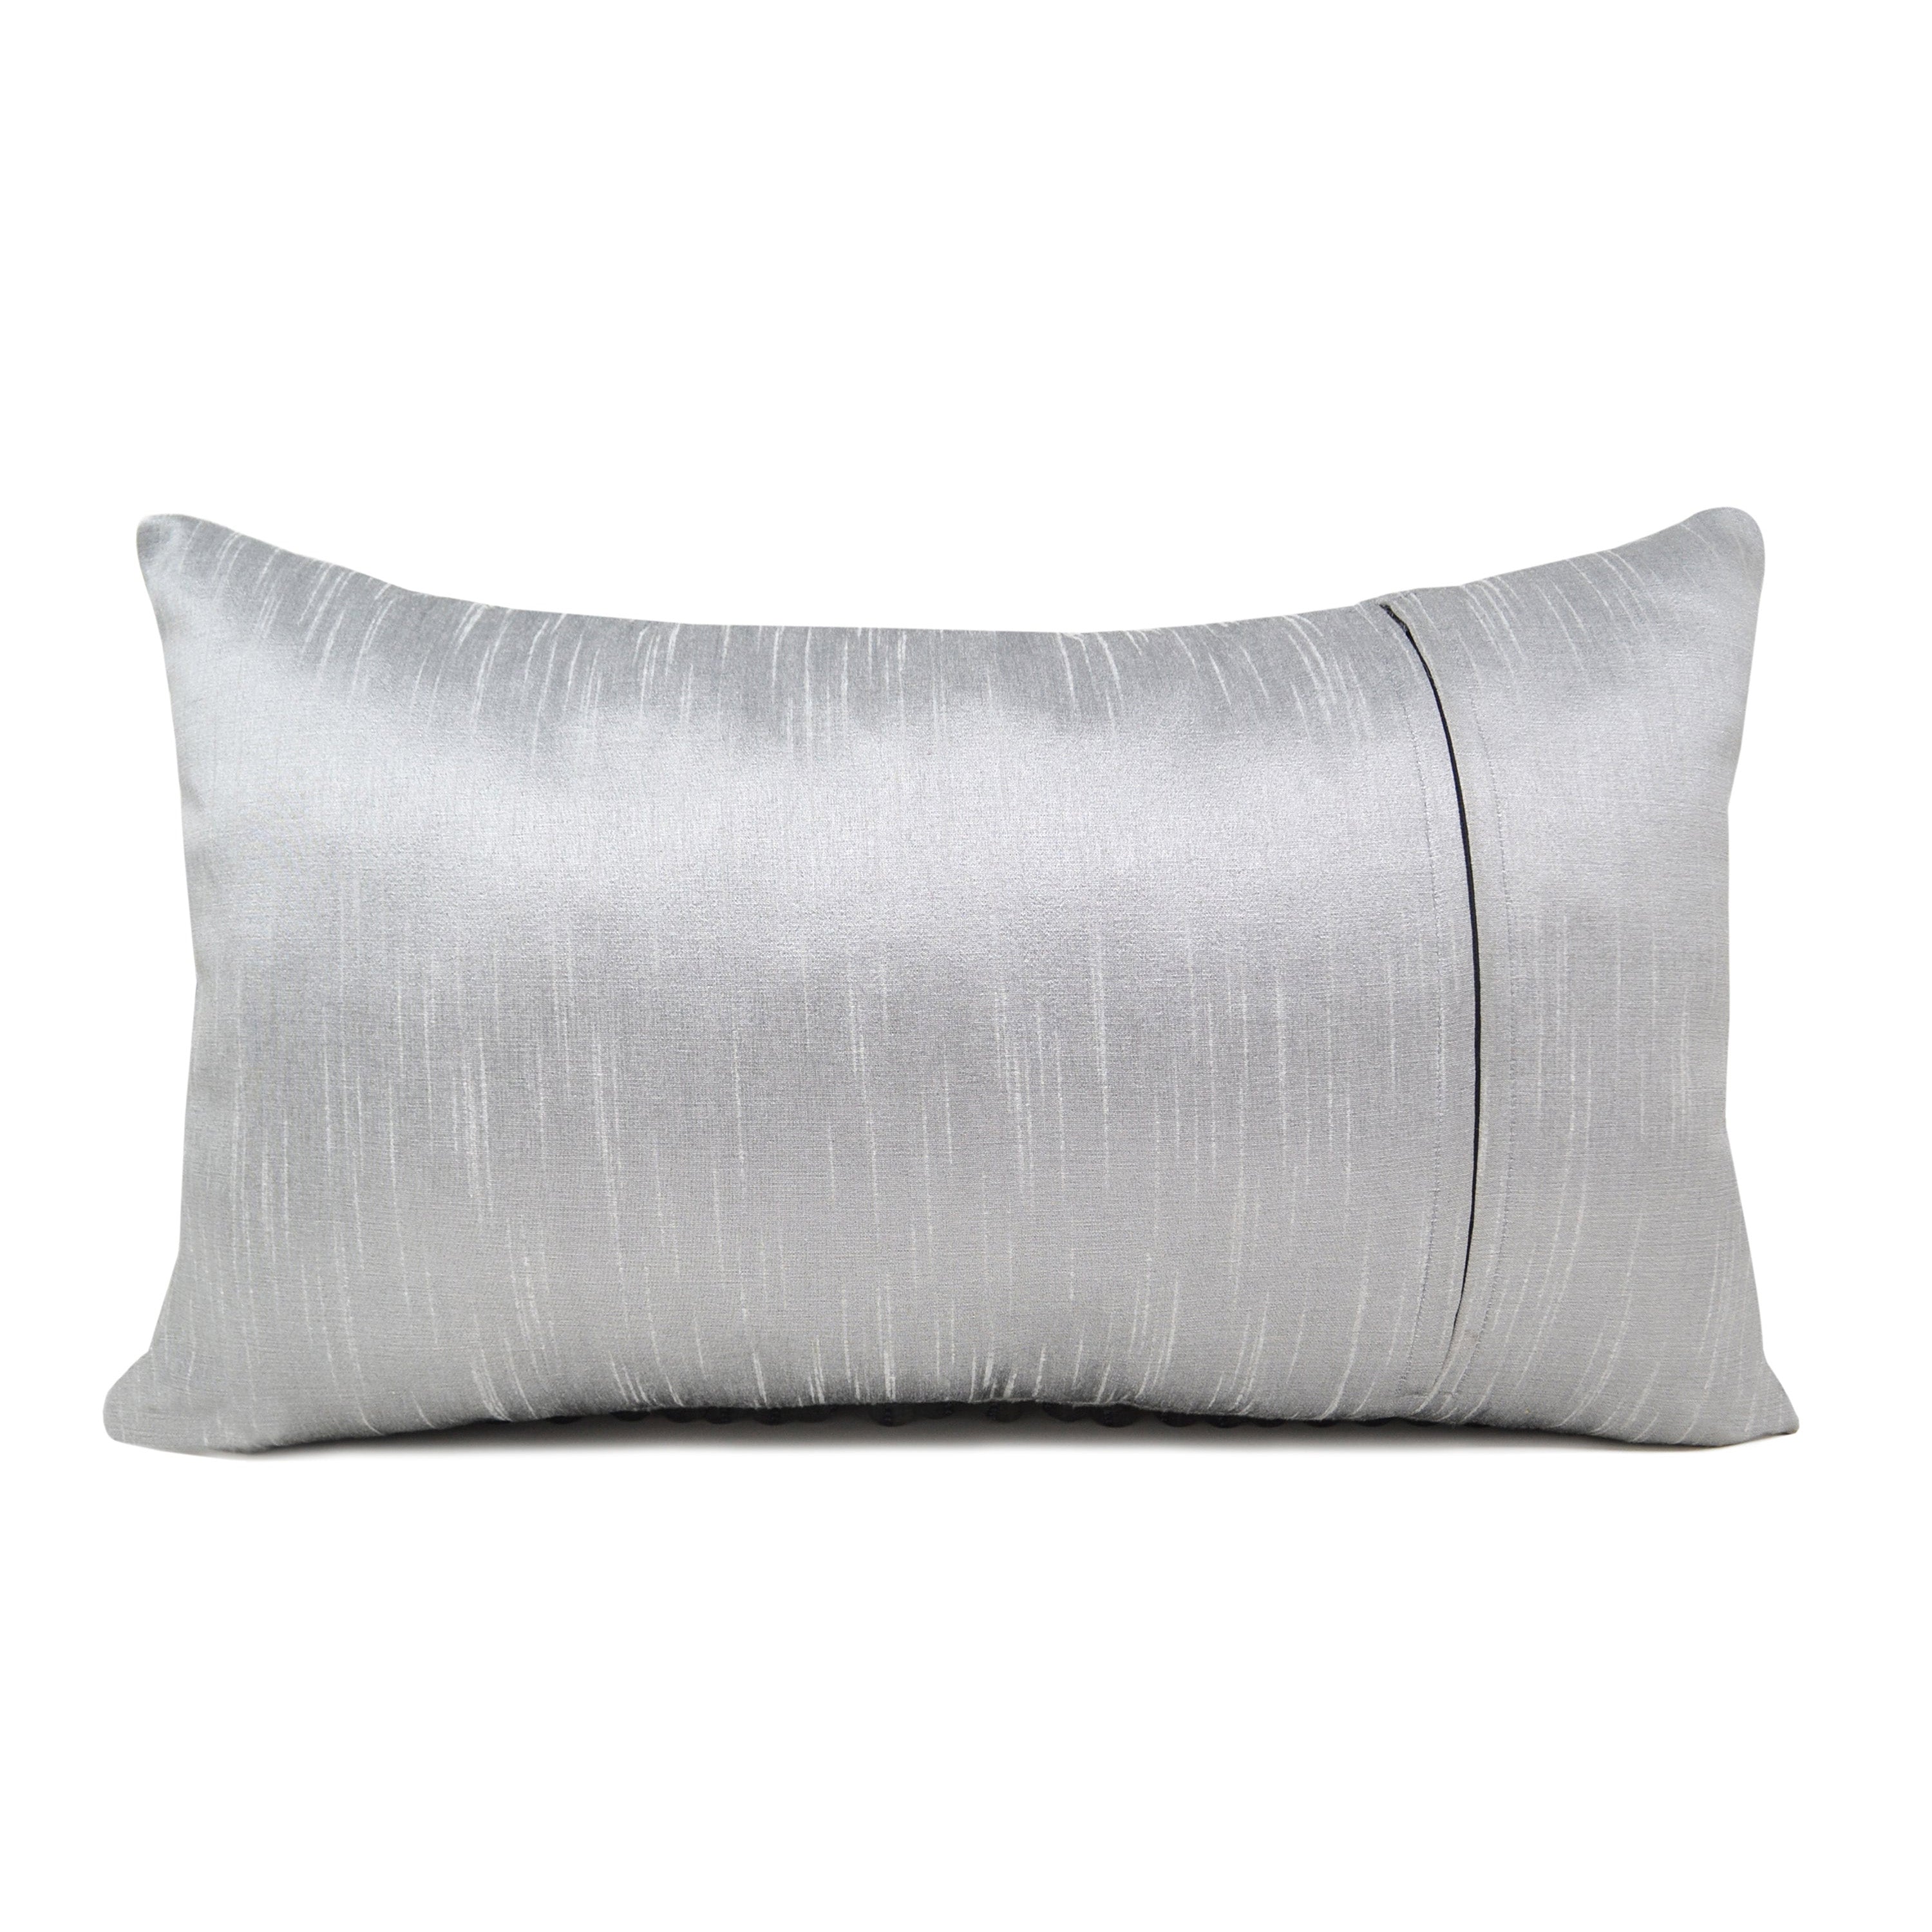 Cascading Silver Sequin Pillow Cover